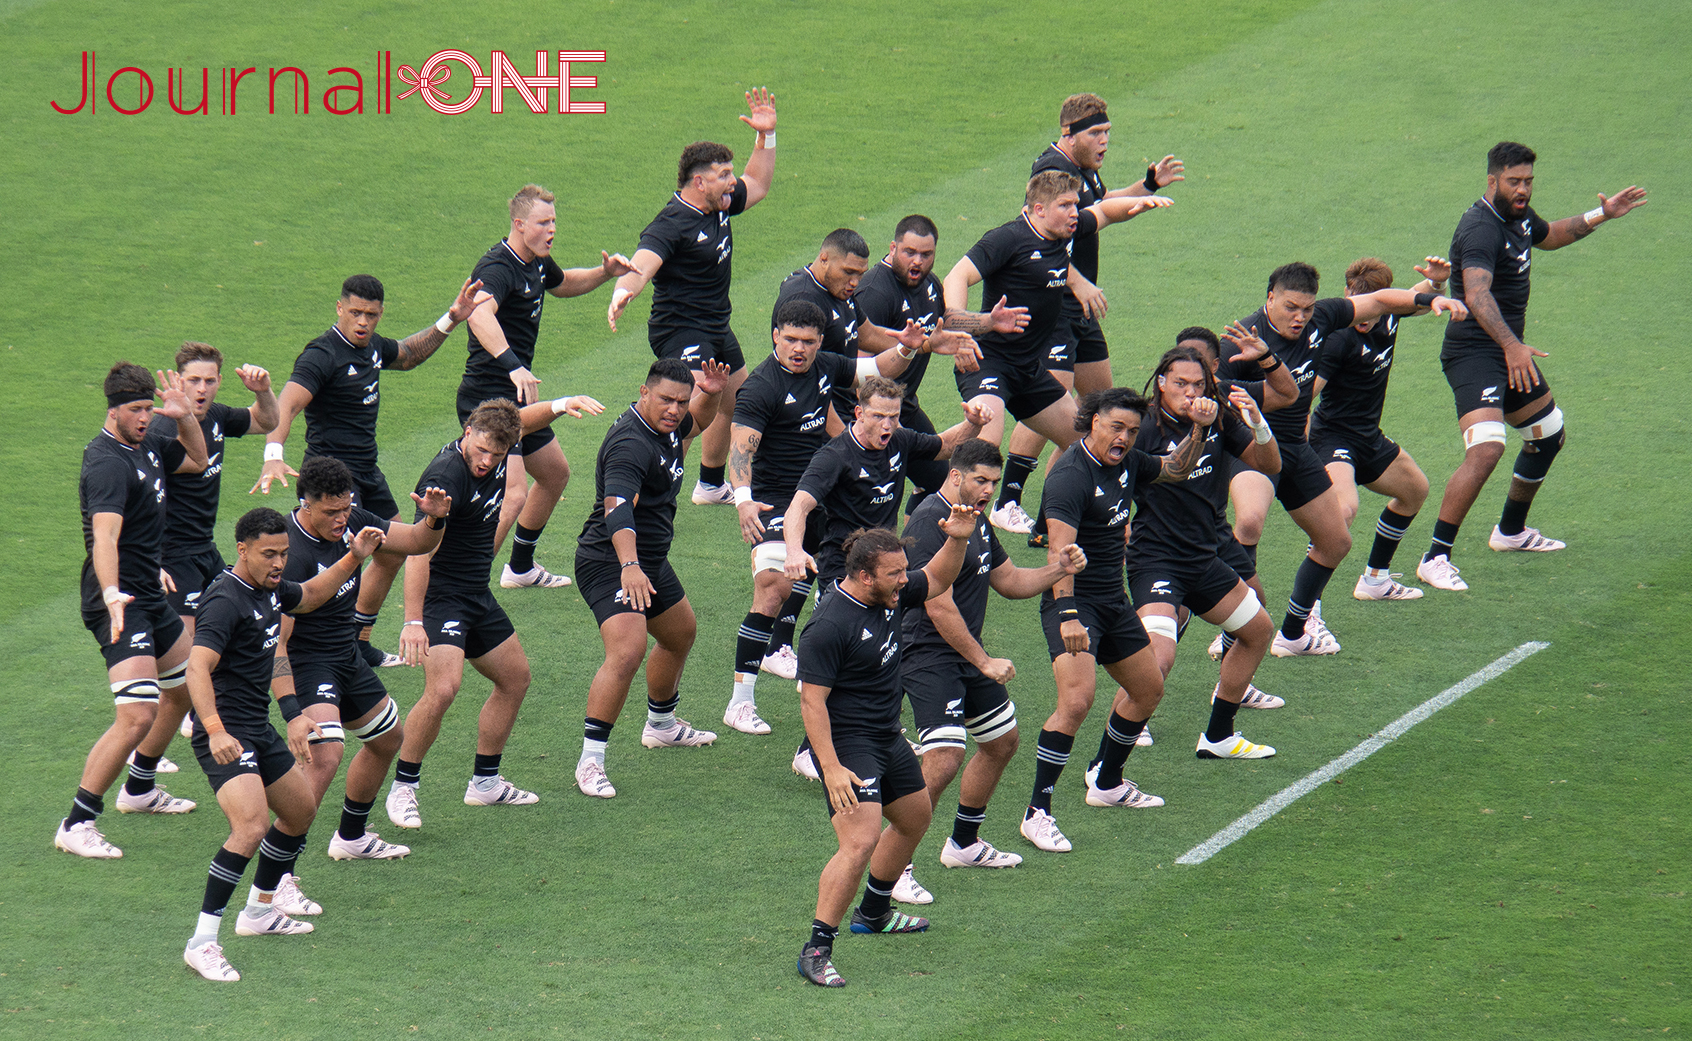 リポビタンD2023| JAPAN XV vs All Blacks XV| ハカを披露するニュージーランド代表選手-Journal-ONE撮影